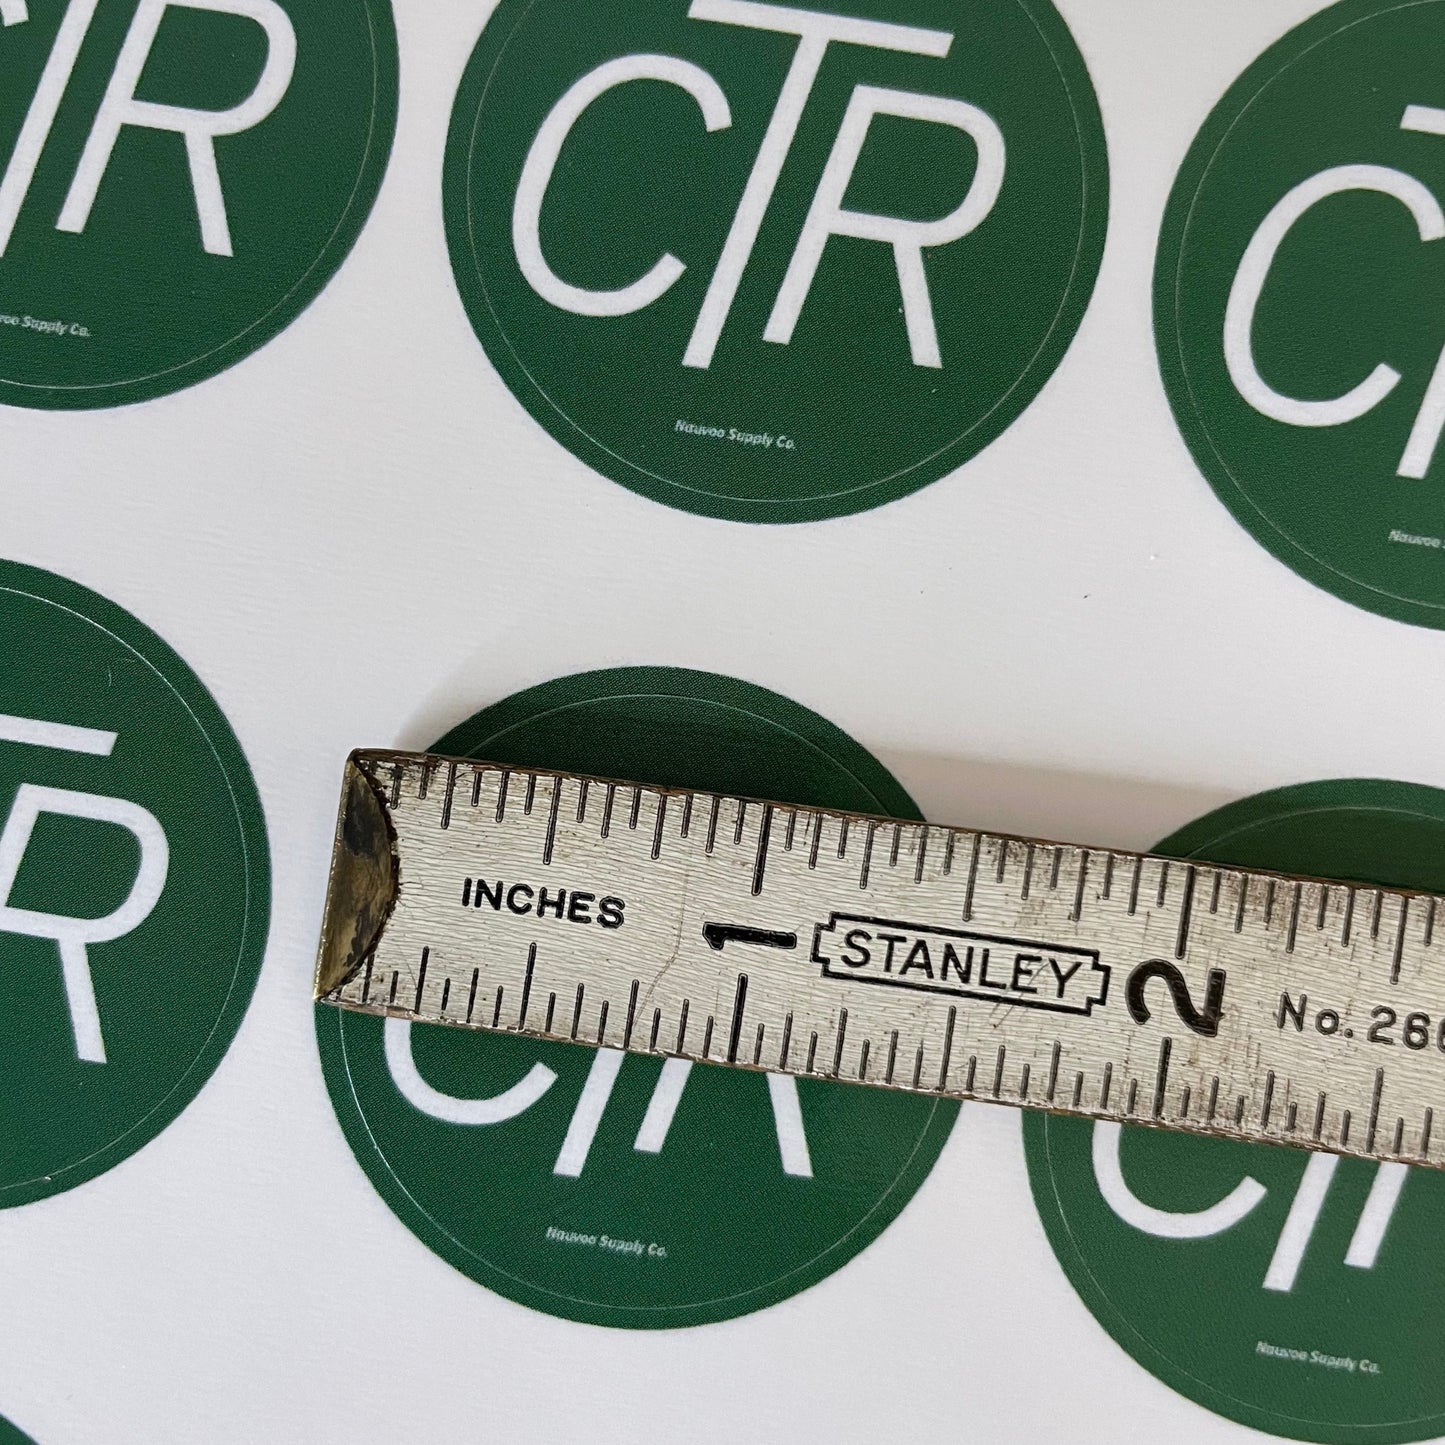 1.5 inch CTR sticker